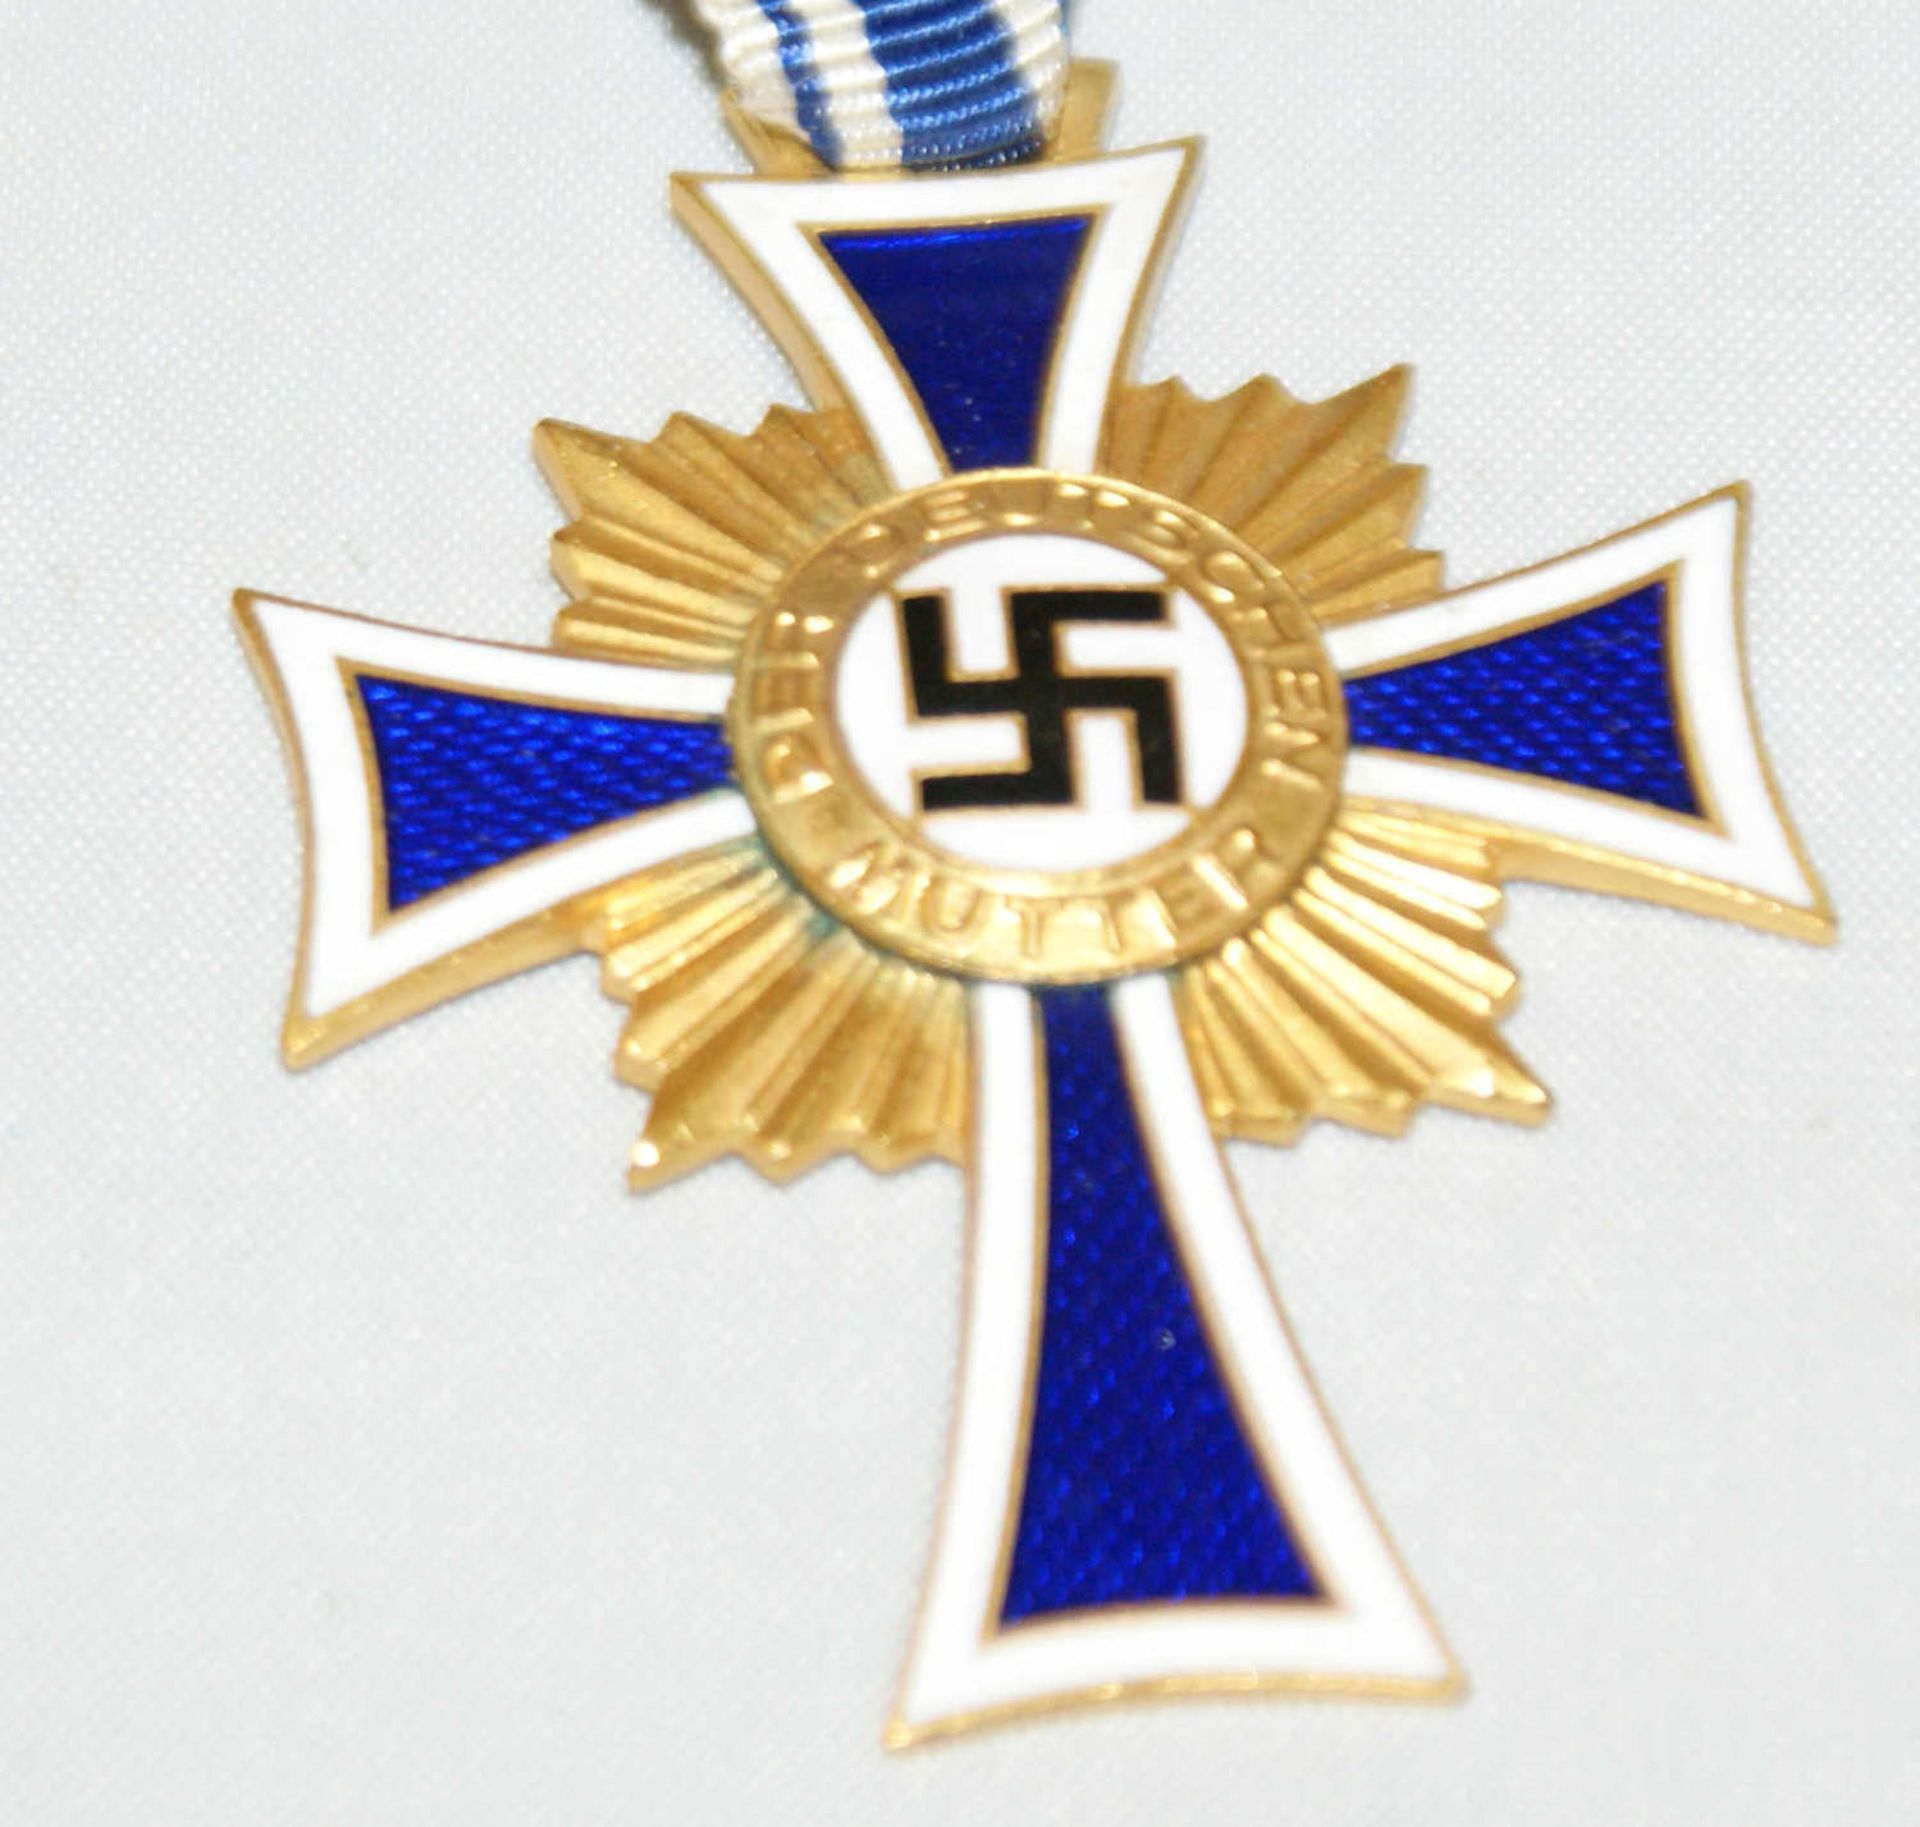 Mutterkreuz 1938, Deutschland 1933-1945, 3. Reich, Mutterkreuz in Gold, 1. Stufe, 2. Modell. - Bild 2 aus 3